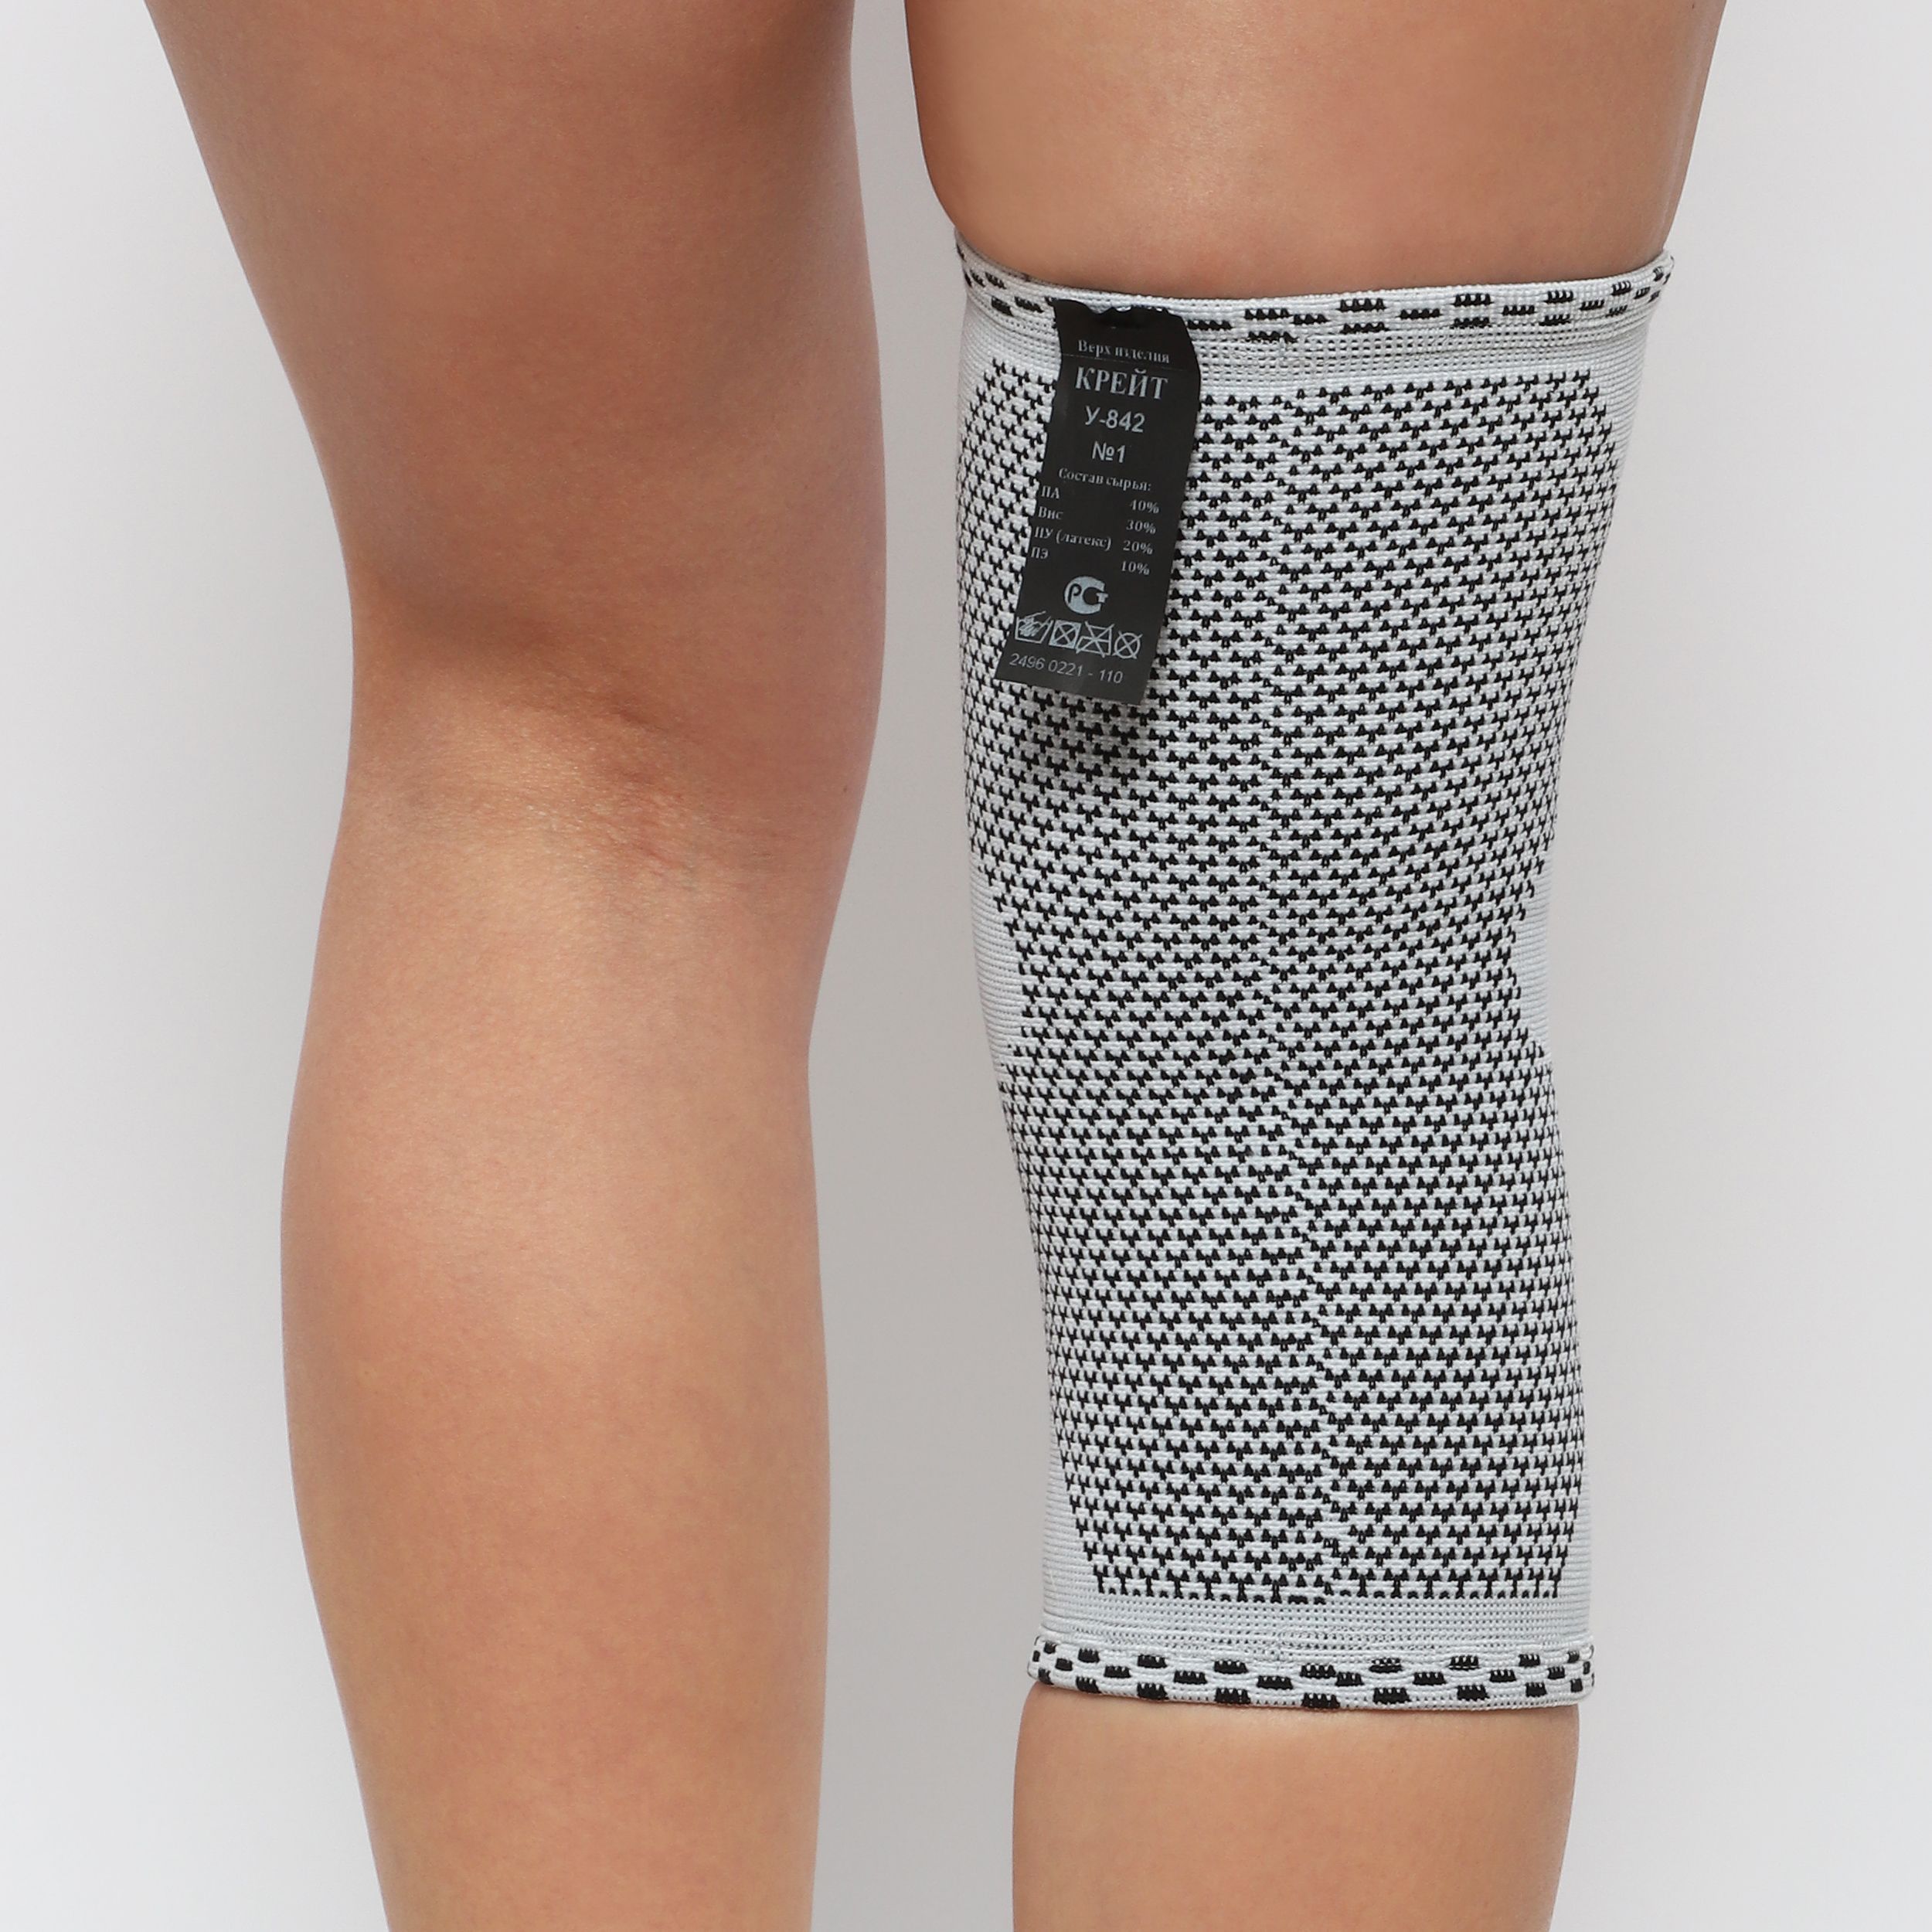 Изображение бандажа для коленного сустава Крейт У-842 - надежная поддержка и комфорт